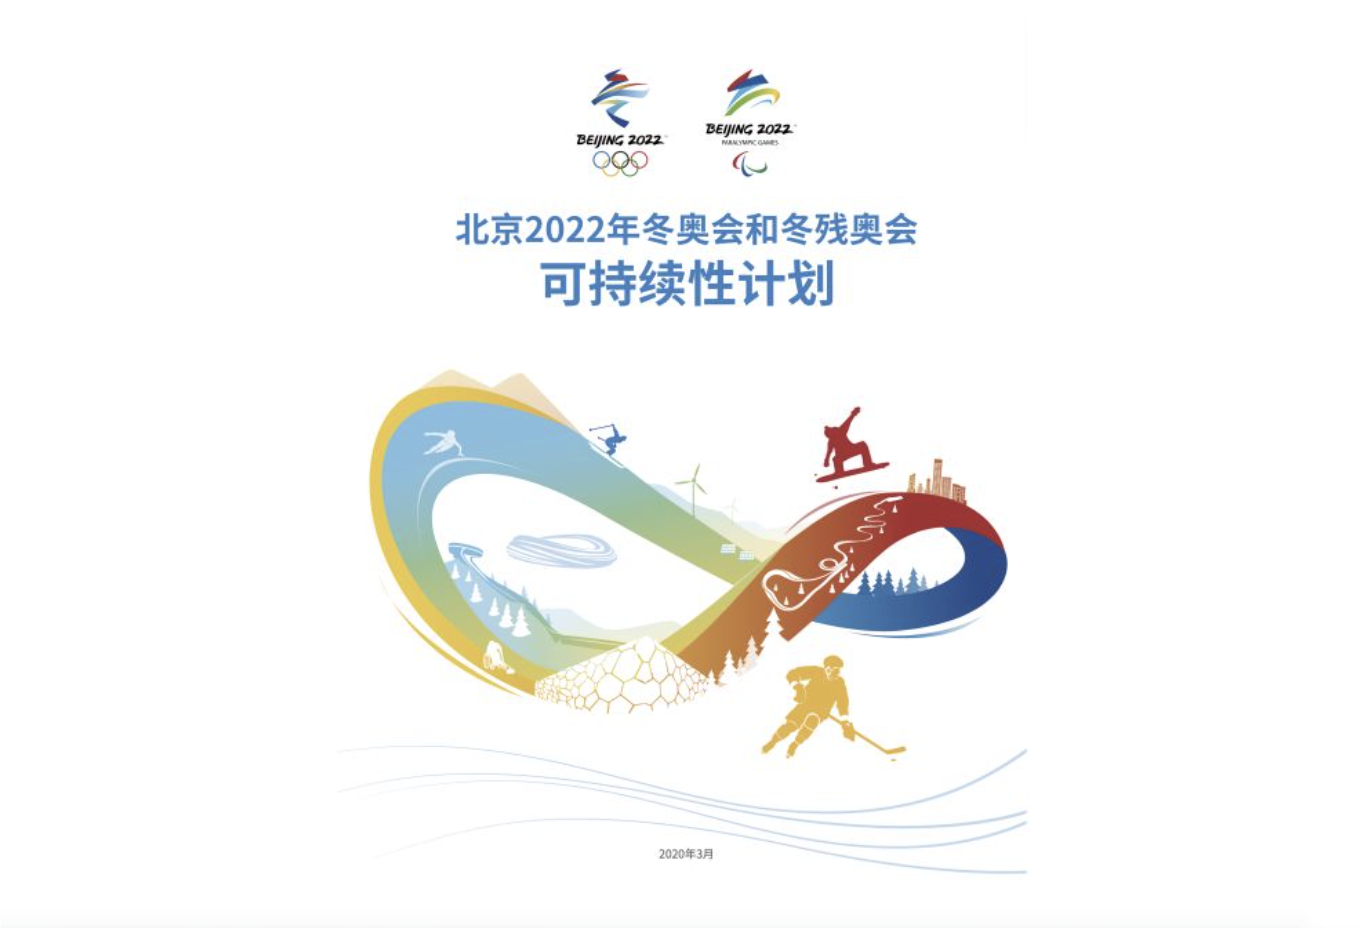 《北京2022年冬奥会和冬残奥会可持续性计划》发布